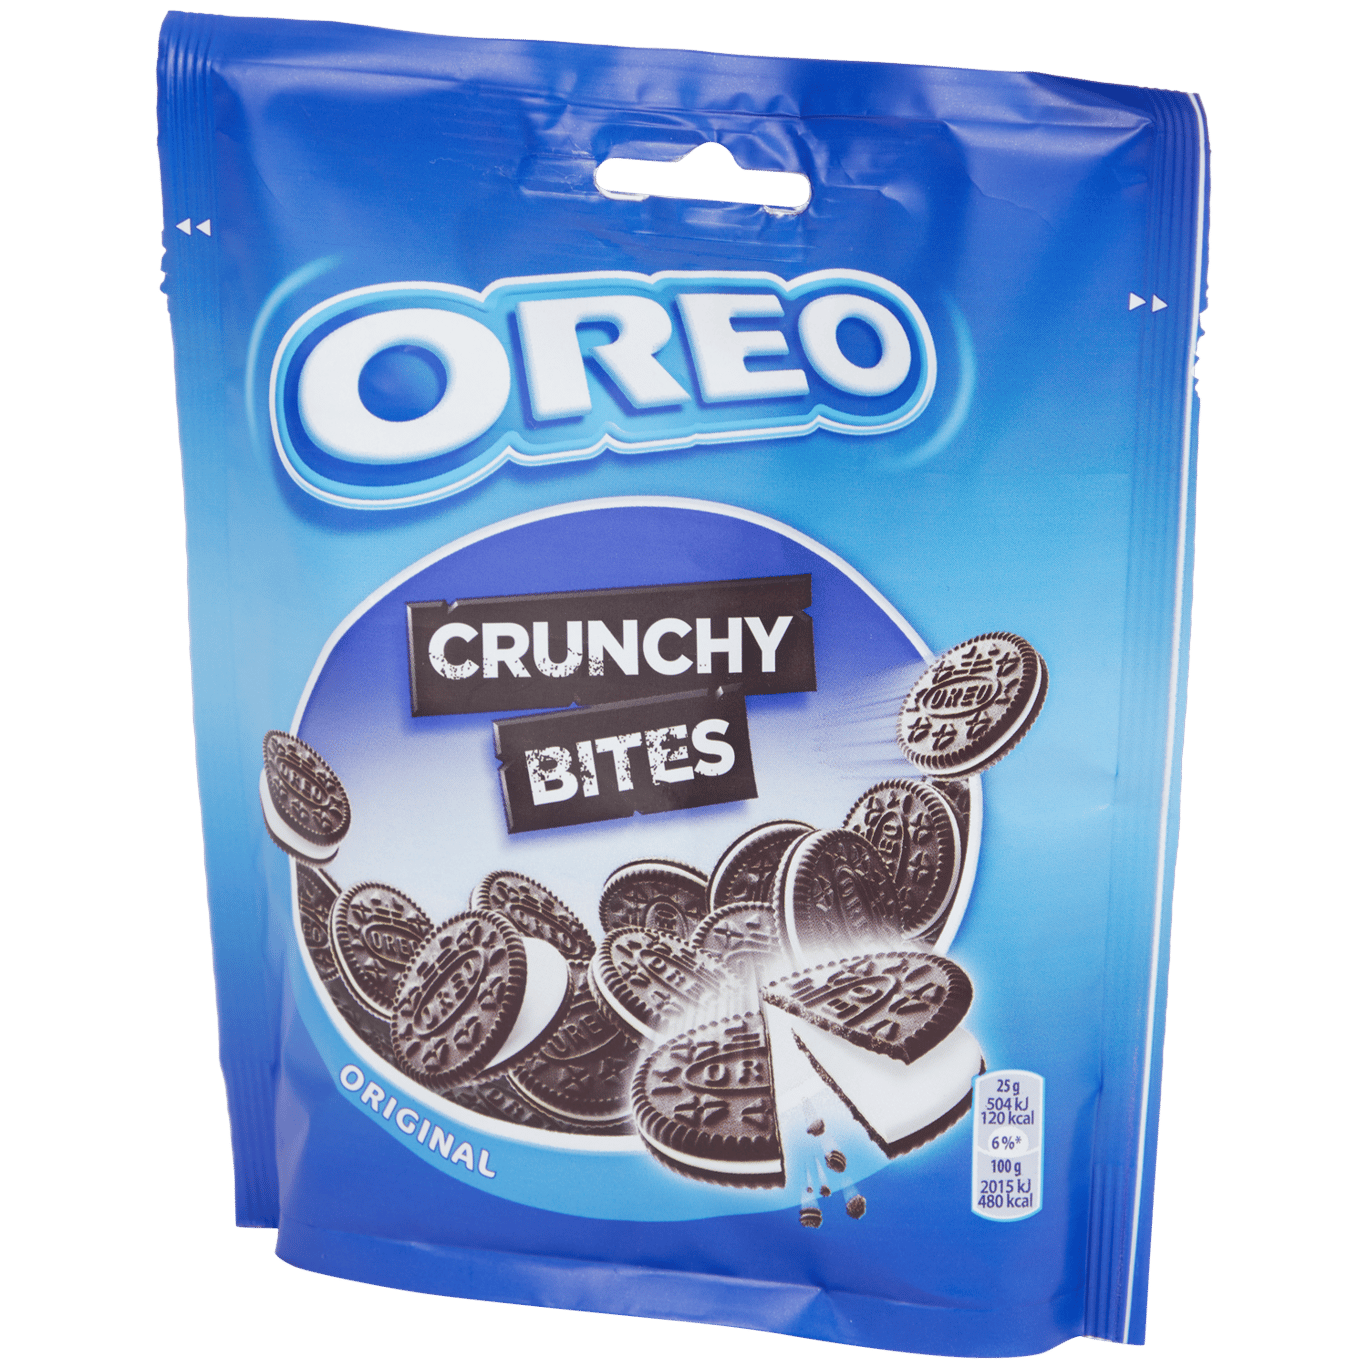 Crunchy Bites Oreo Original